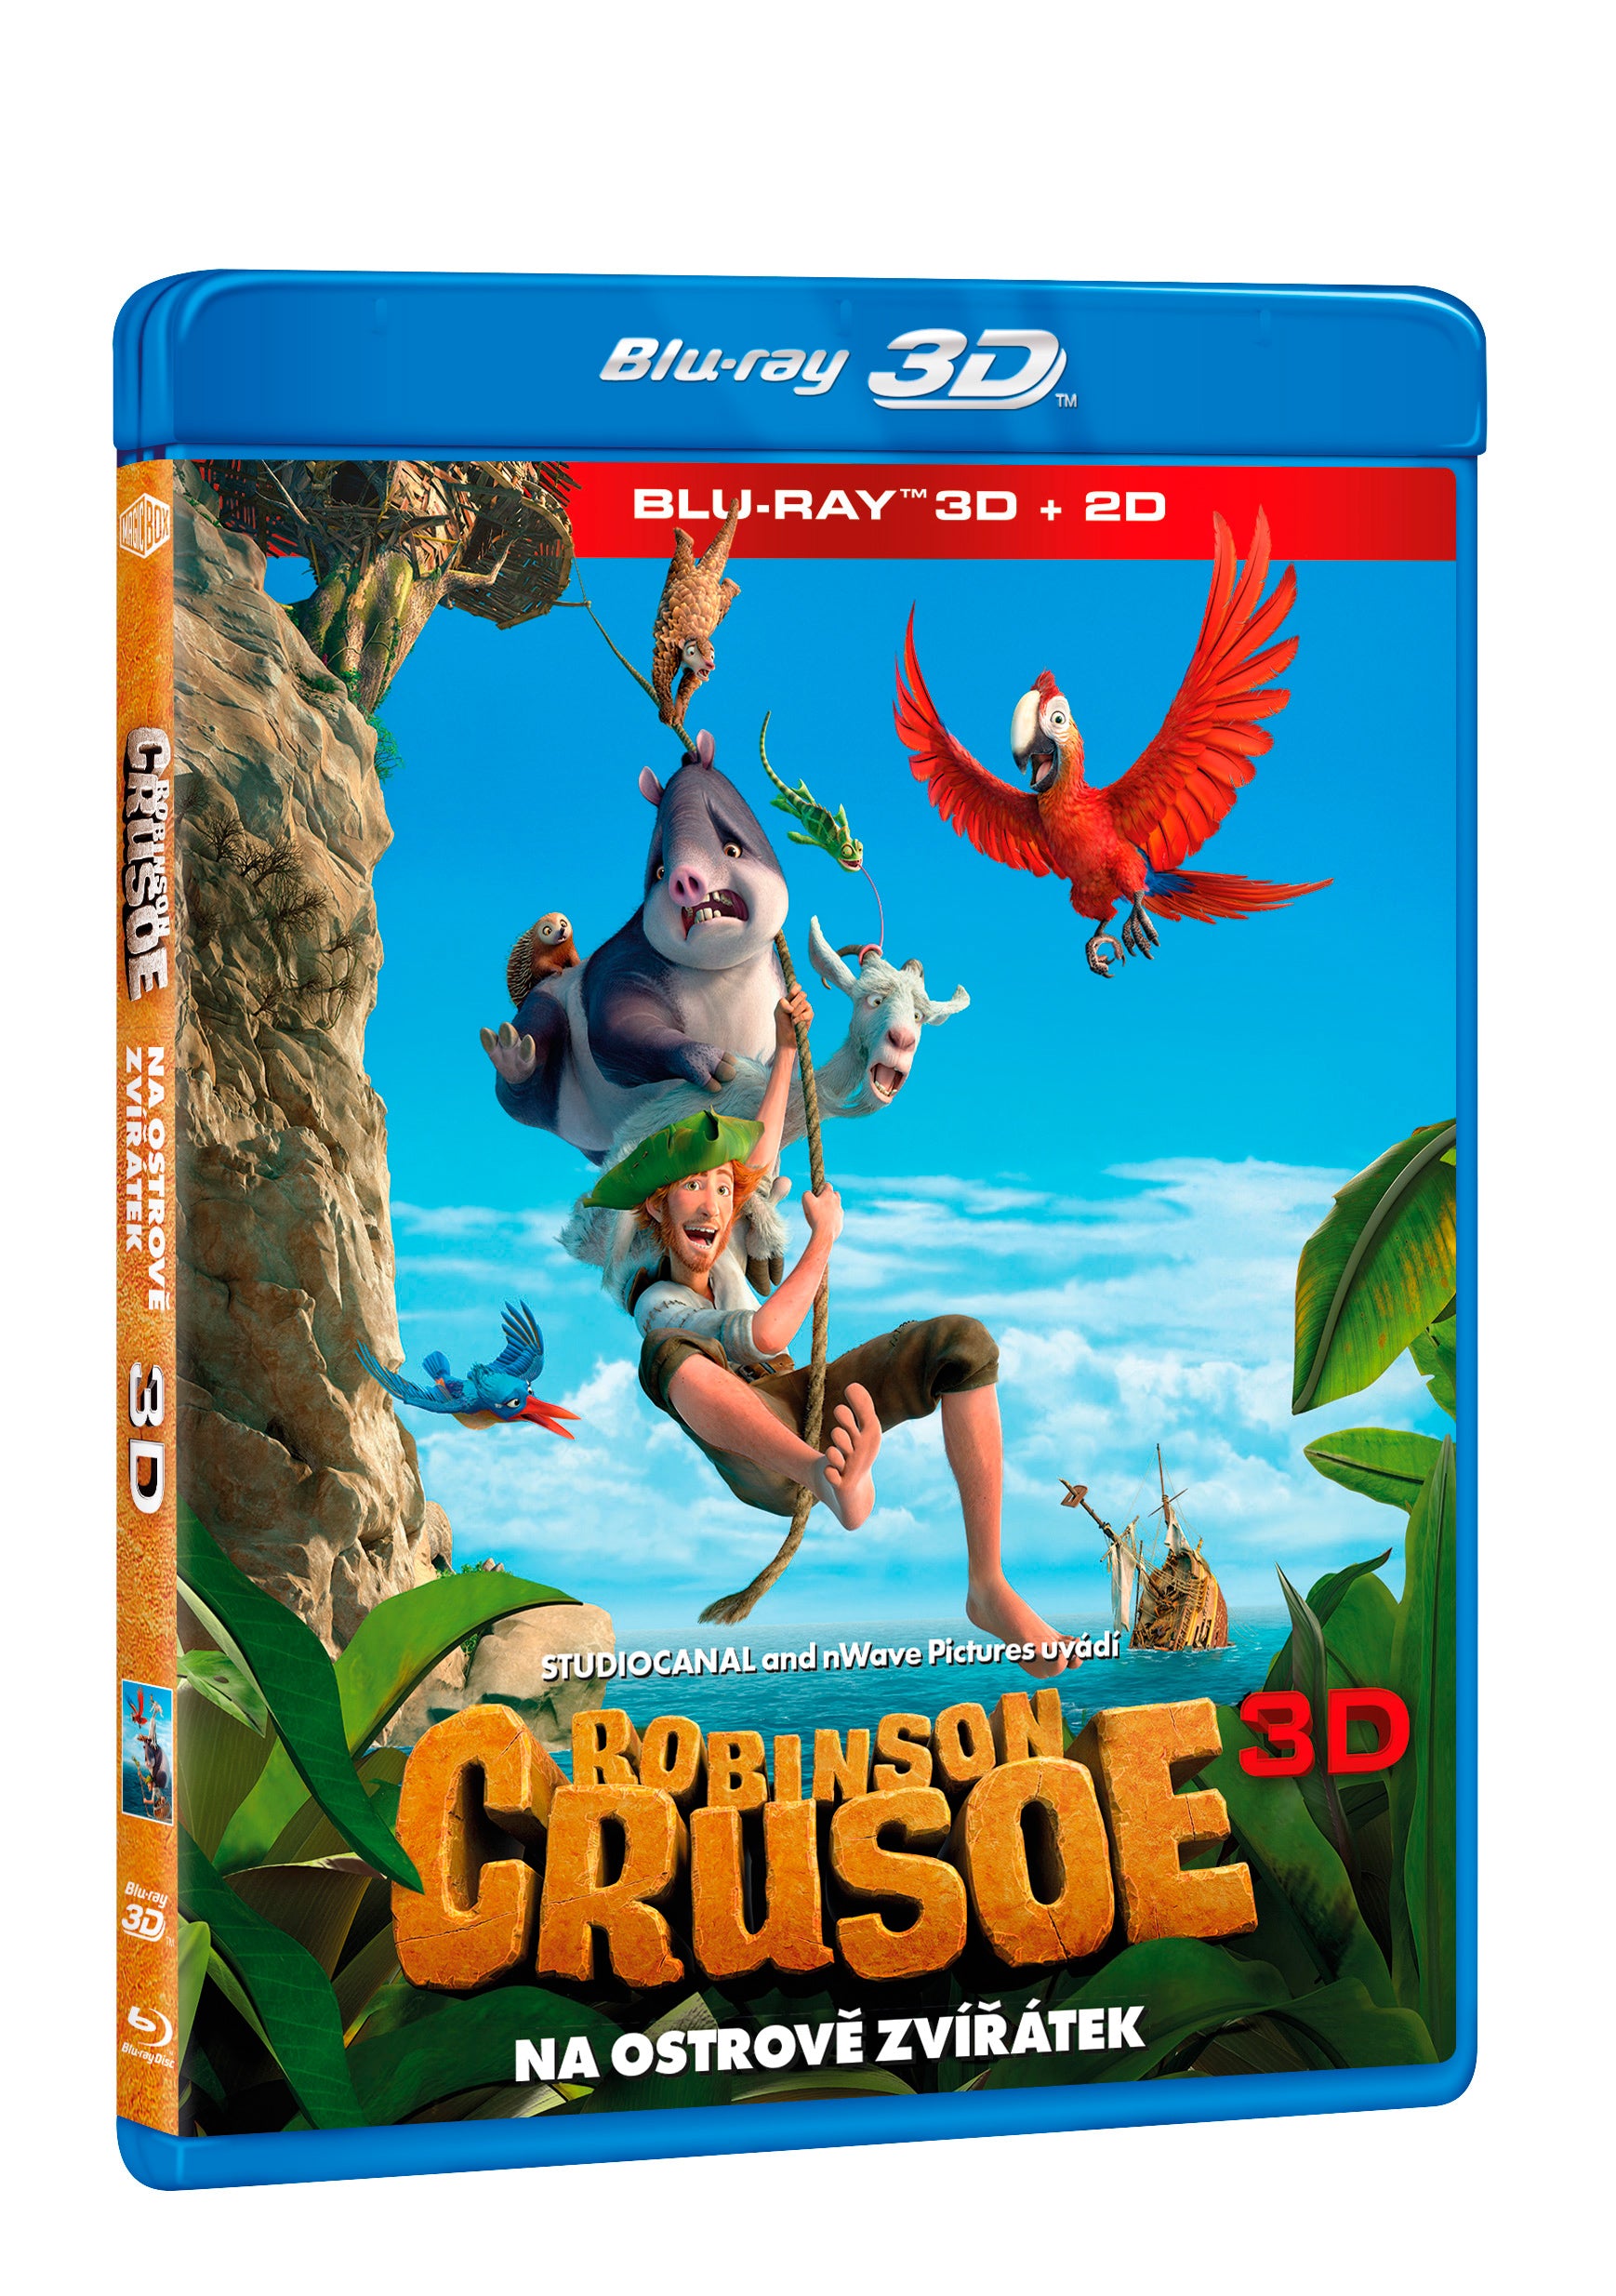 Robinson Crusoe: Na ostrove zviratek BD (3D+2D) / Robinson - Czech version